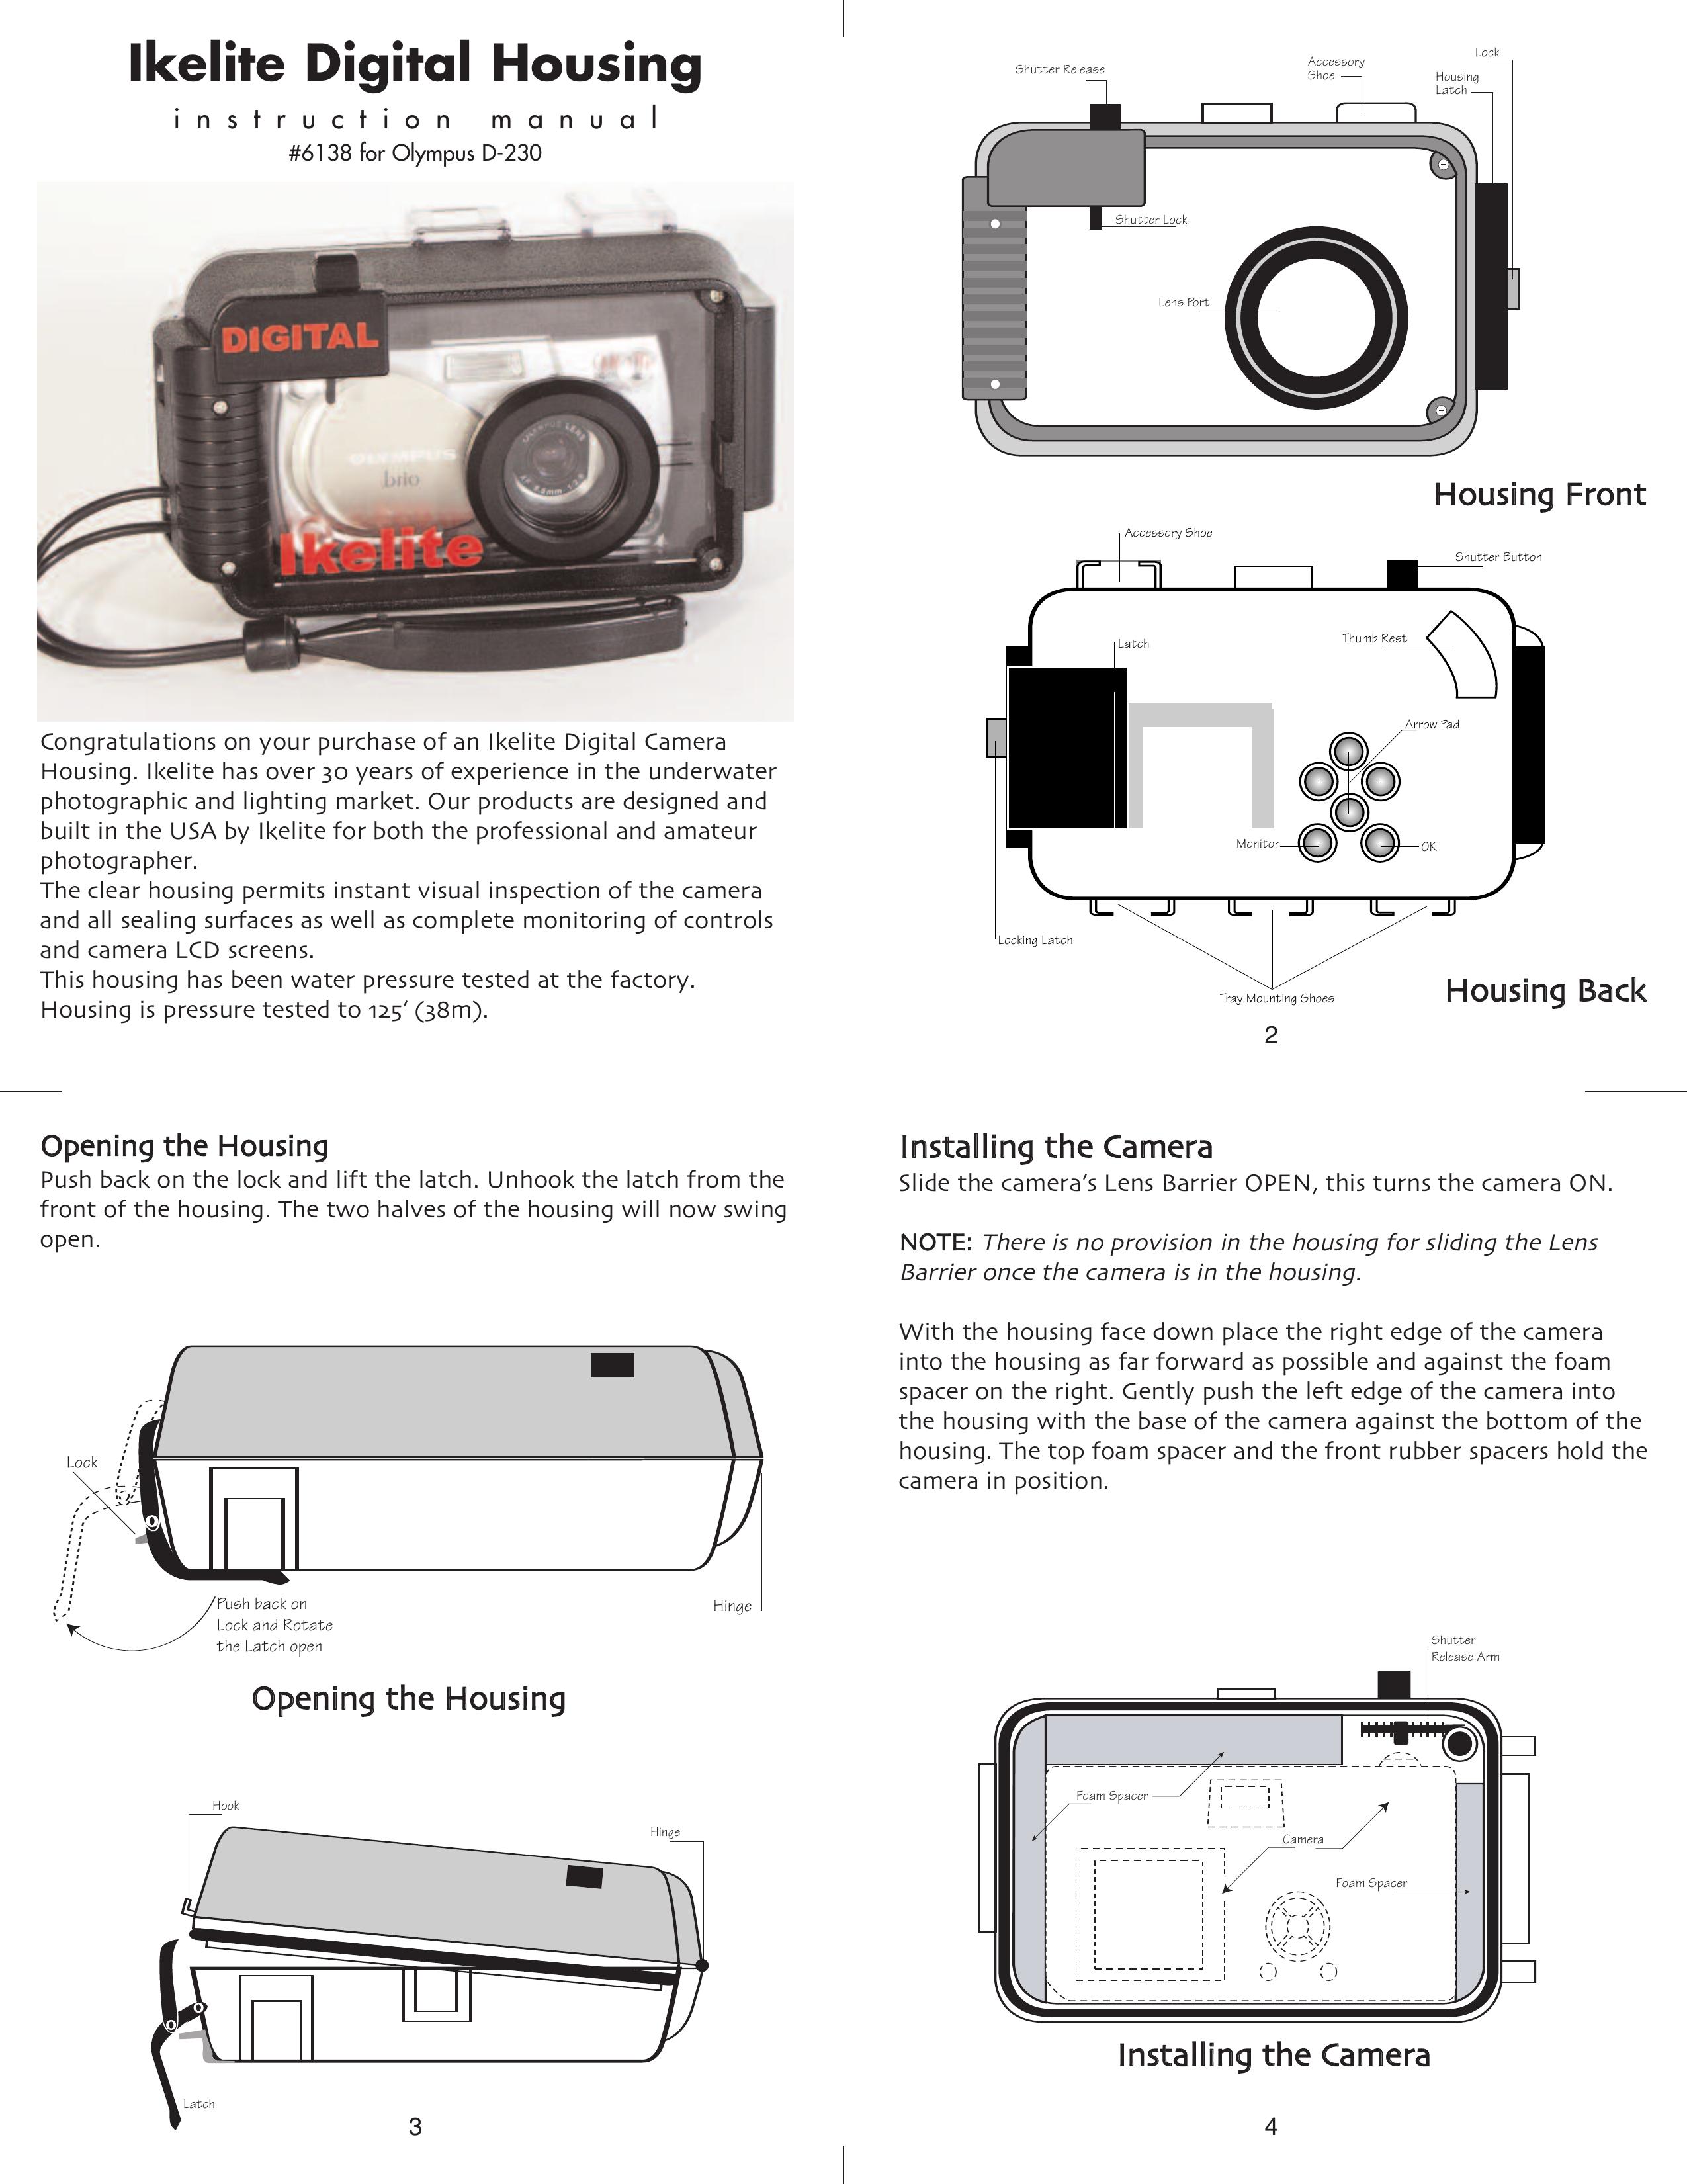 Ikelite D-230 Digital Camera User Manual